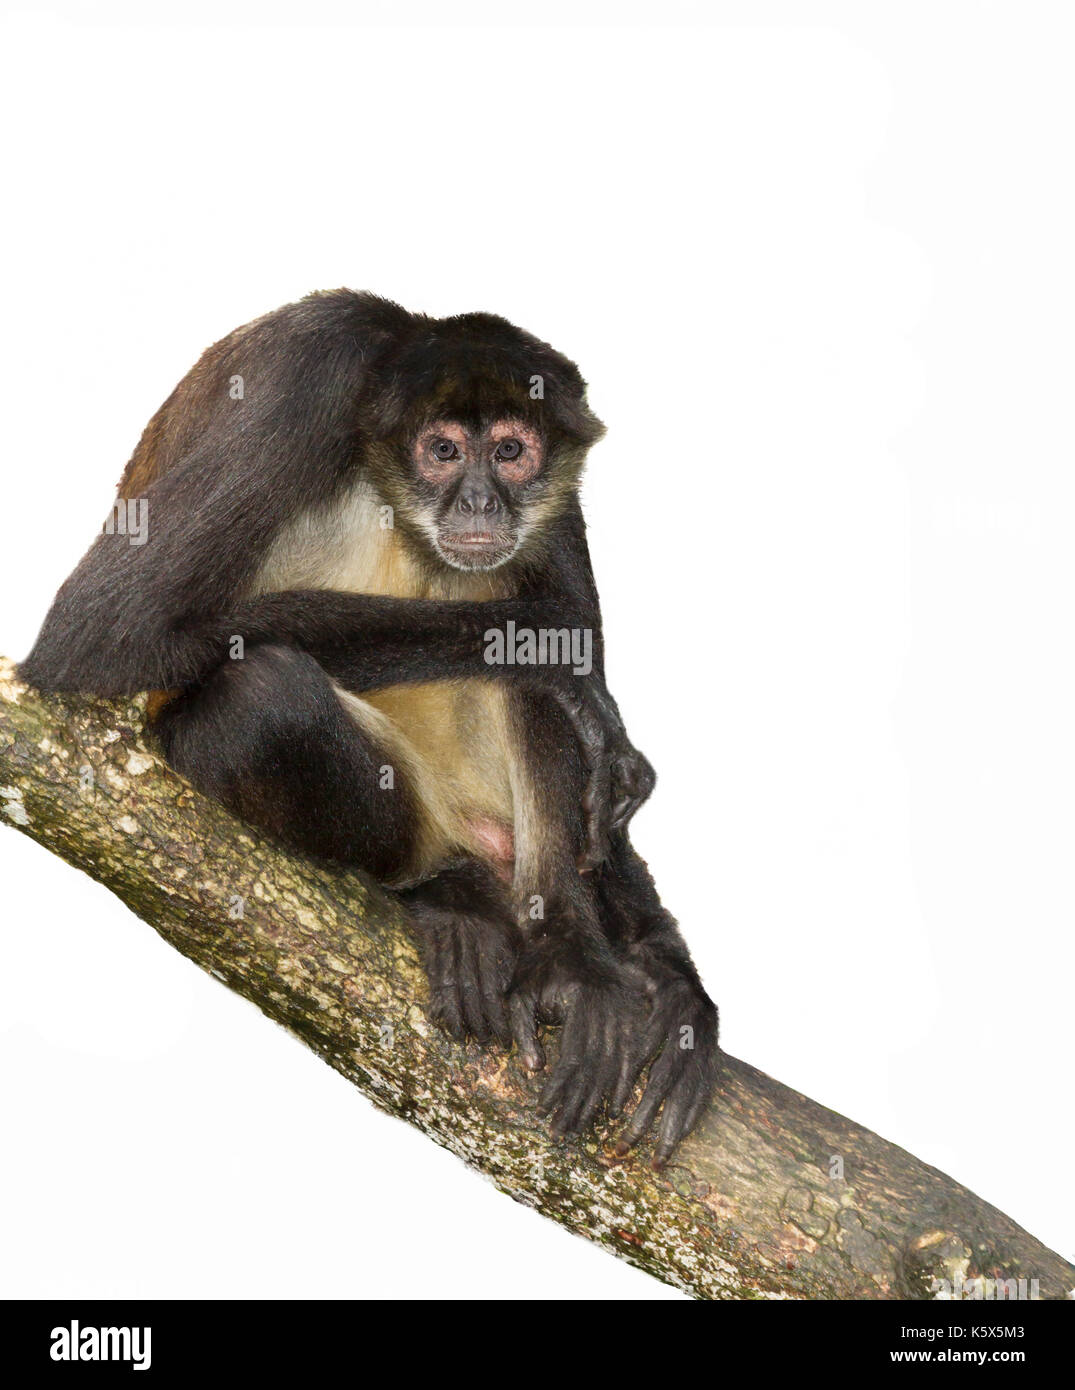 Geoffroy's spider monkey presso la struttura ad albero, intaglio, Belize, America Centrale Foto Stock